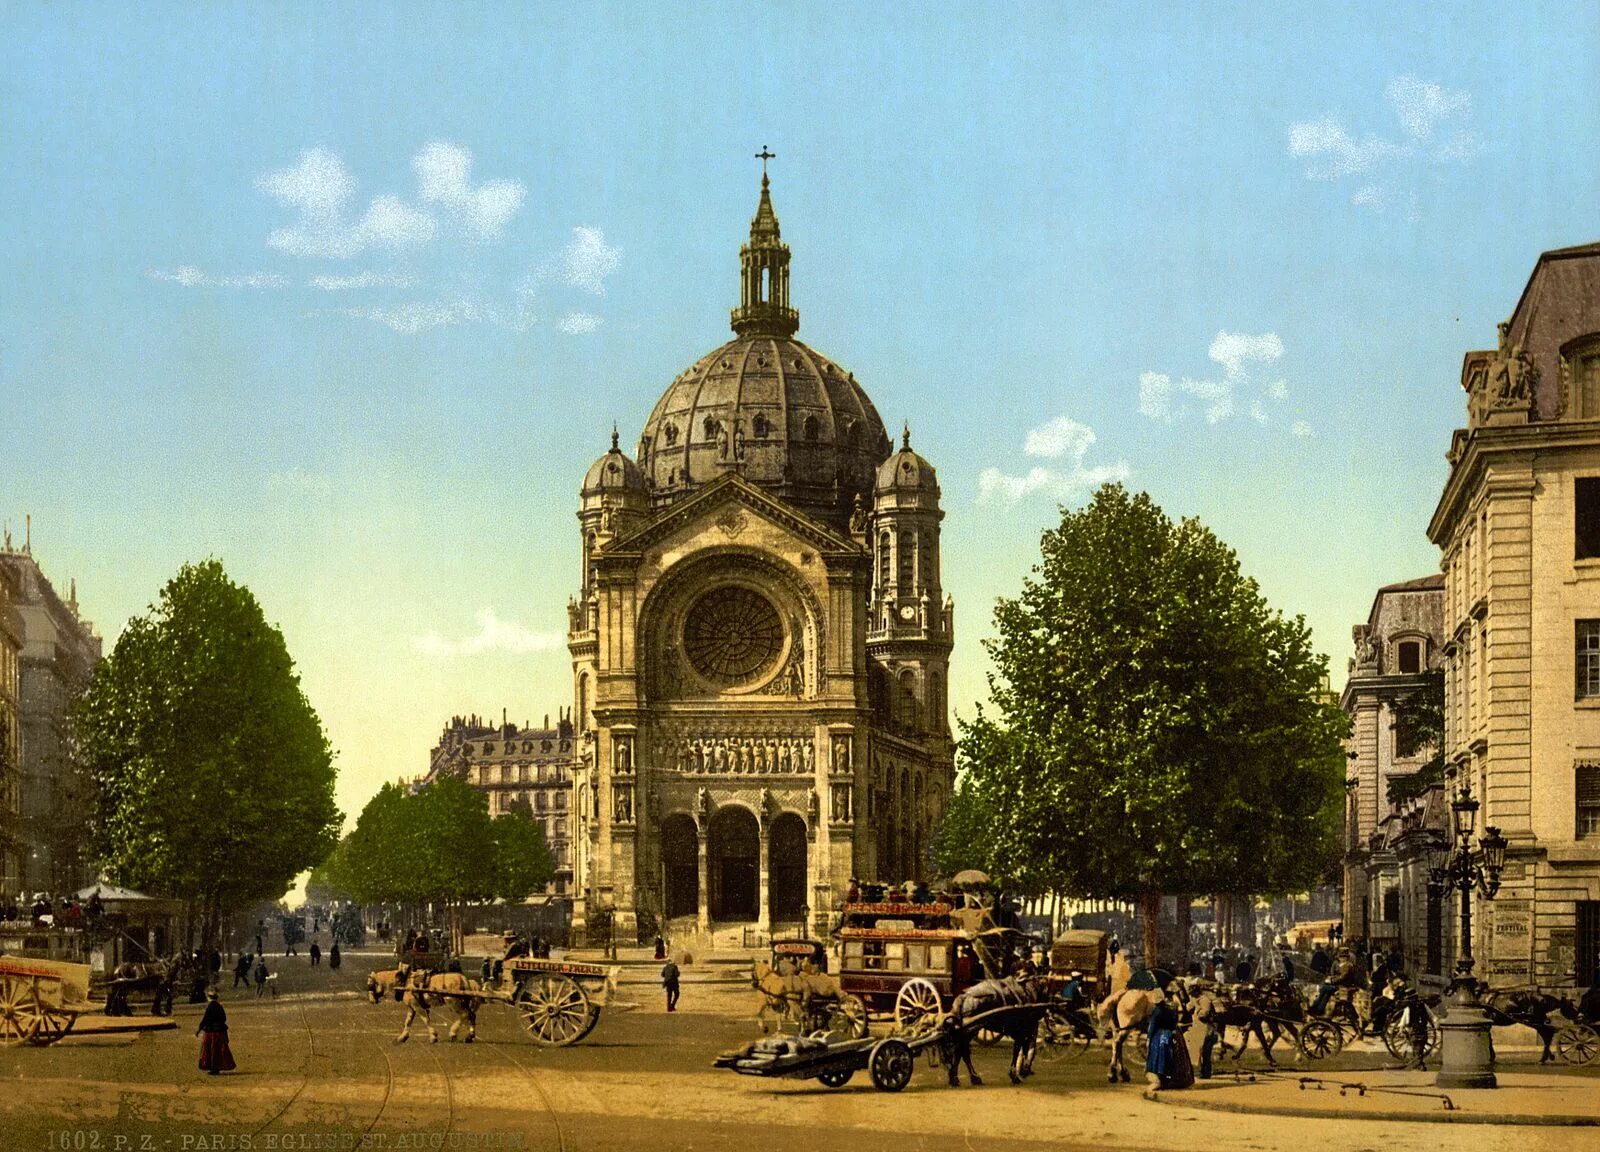 Франция 1800. Церковь сент Огюстен в Париже. Церковь сент-Огюстен (1860—1871) в Париже. Франция 1890. Церковь в Париже 19 века.